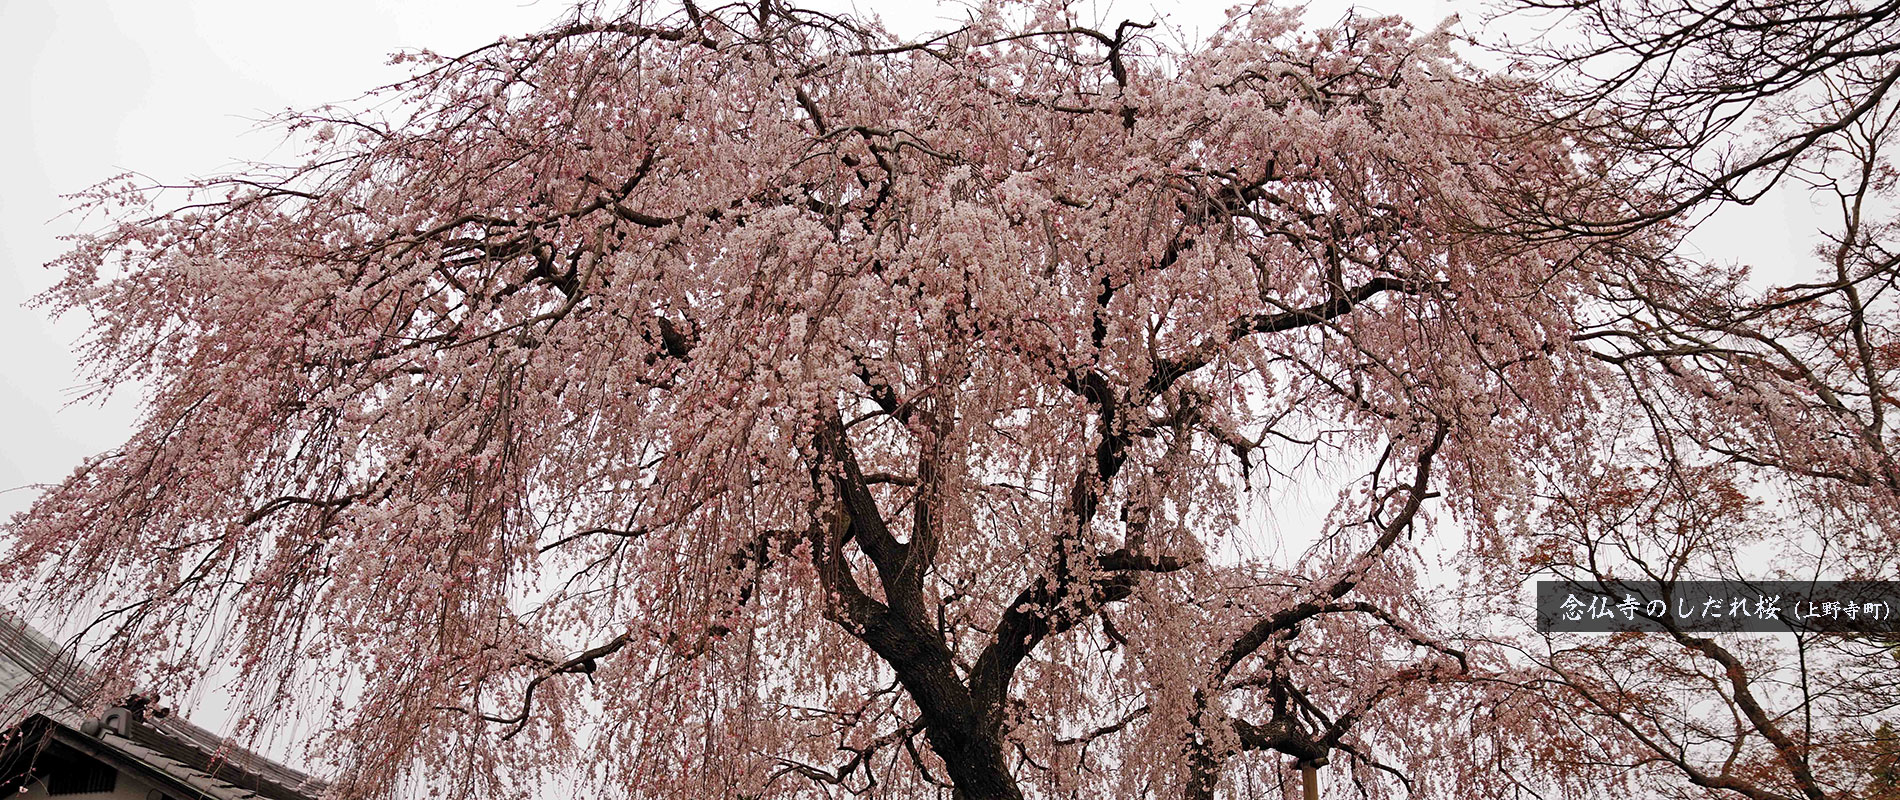 念仏寺のしだれ桜